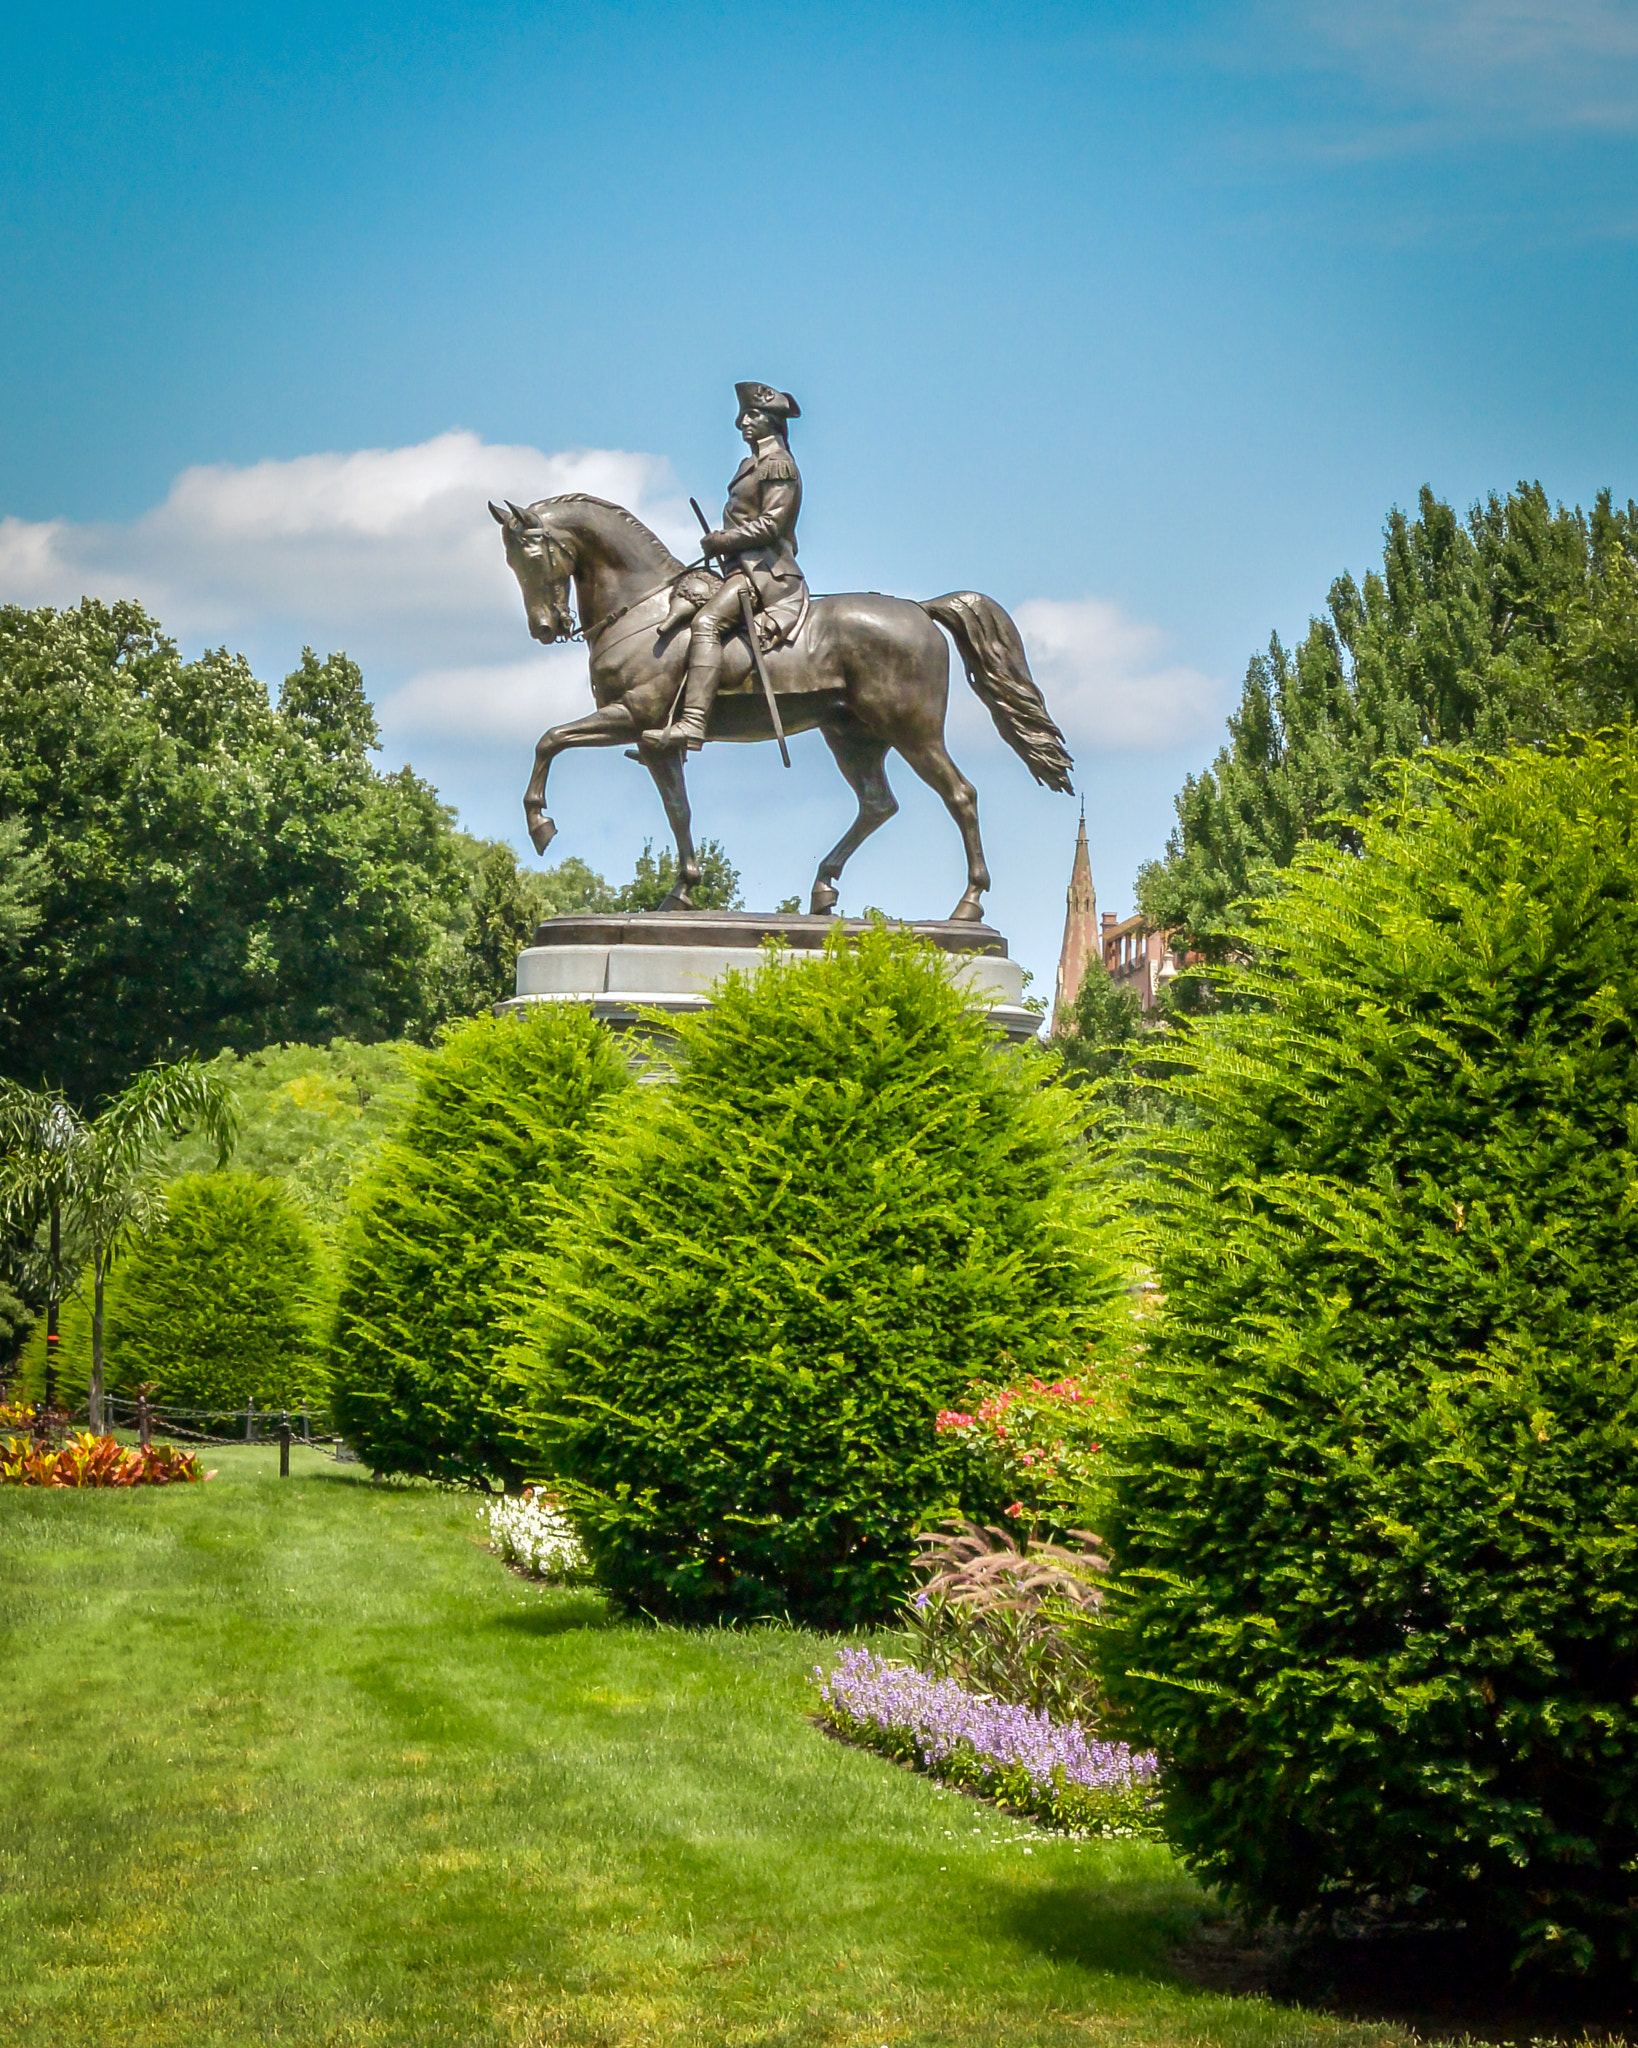 Nikon 1 AW1 sample photo. George washington statue, boston garden photography